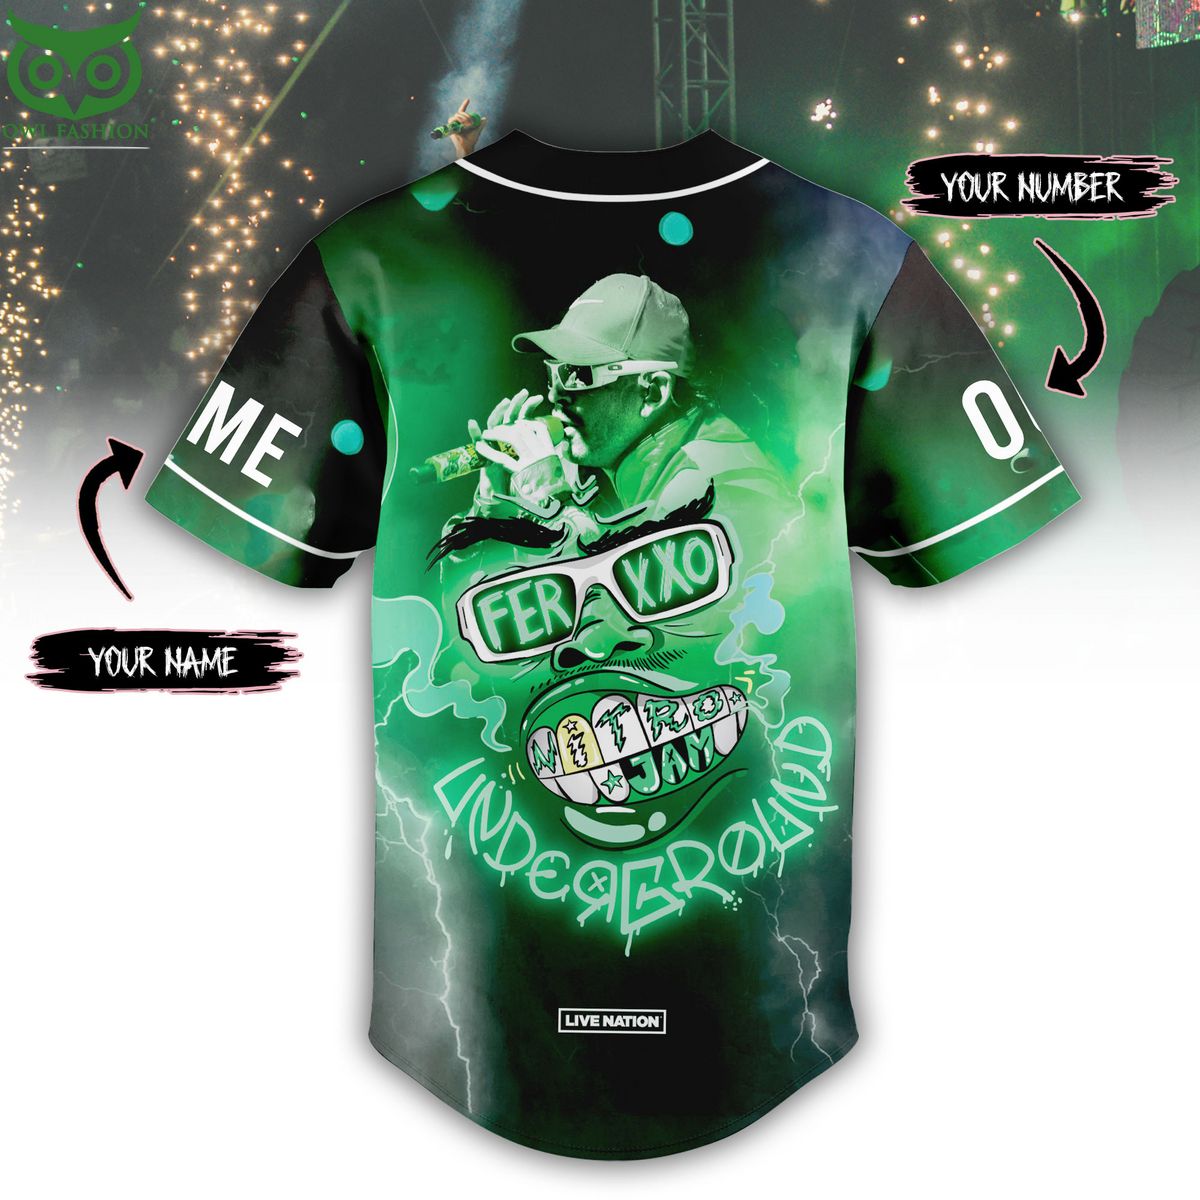 custom name number ferxxo black green baseball jersey 3 UTrBZ.jpg